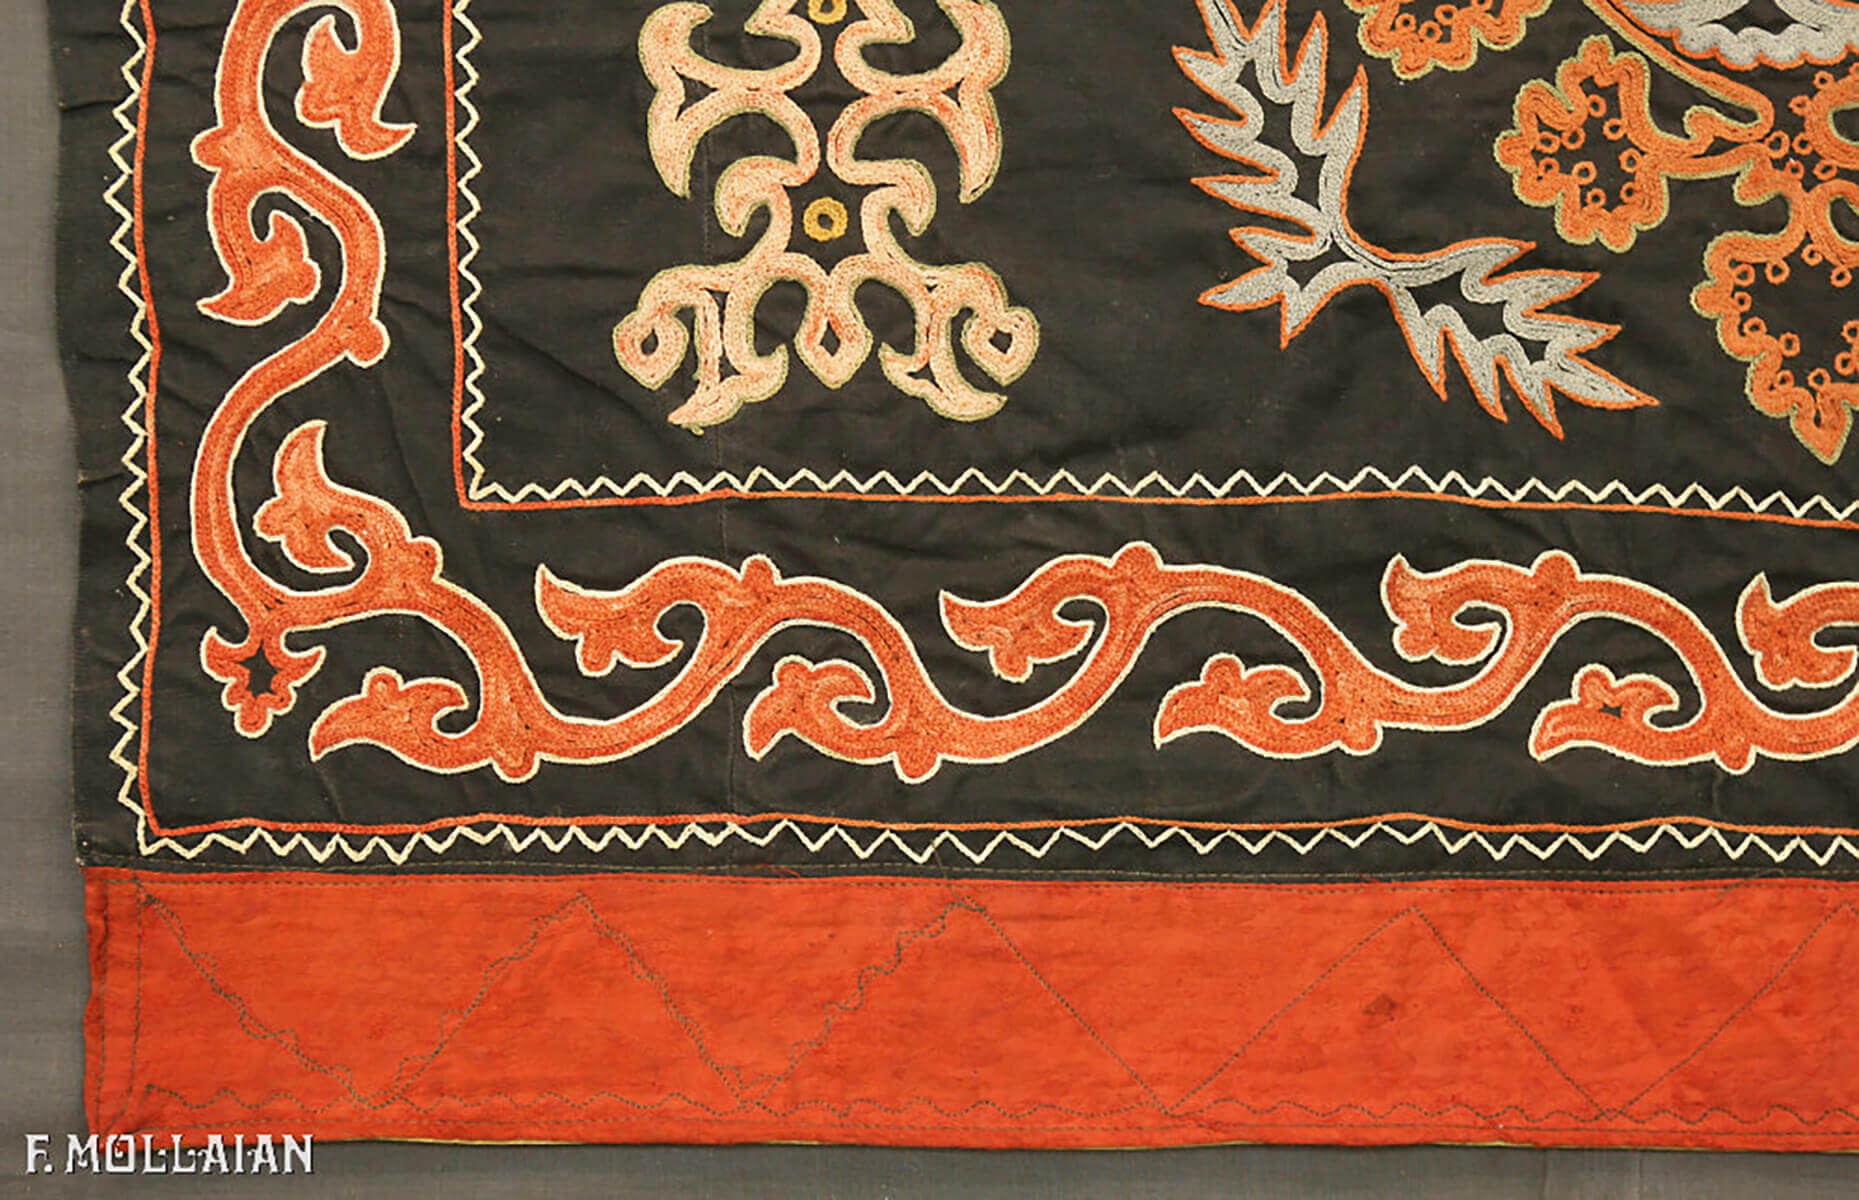 乌兹别克斯坦古董纺织品 n:30879190